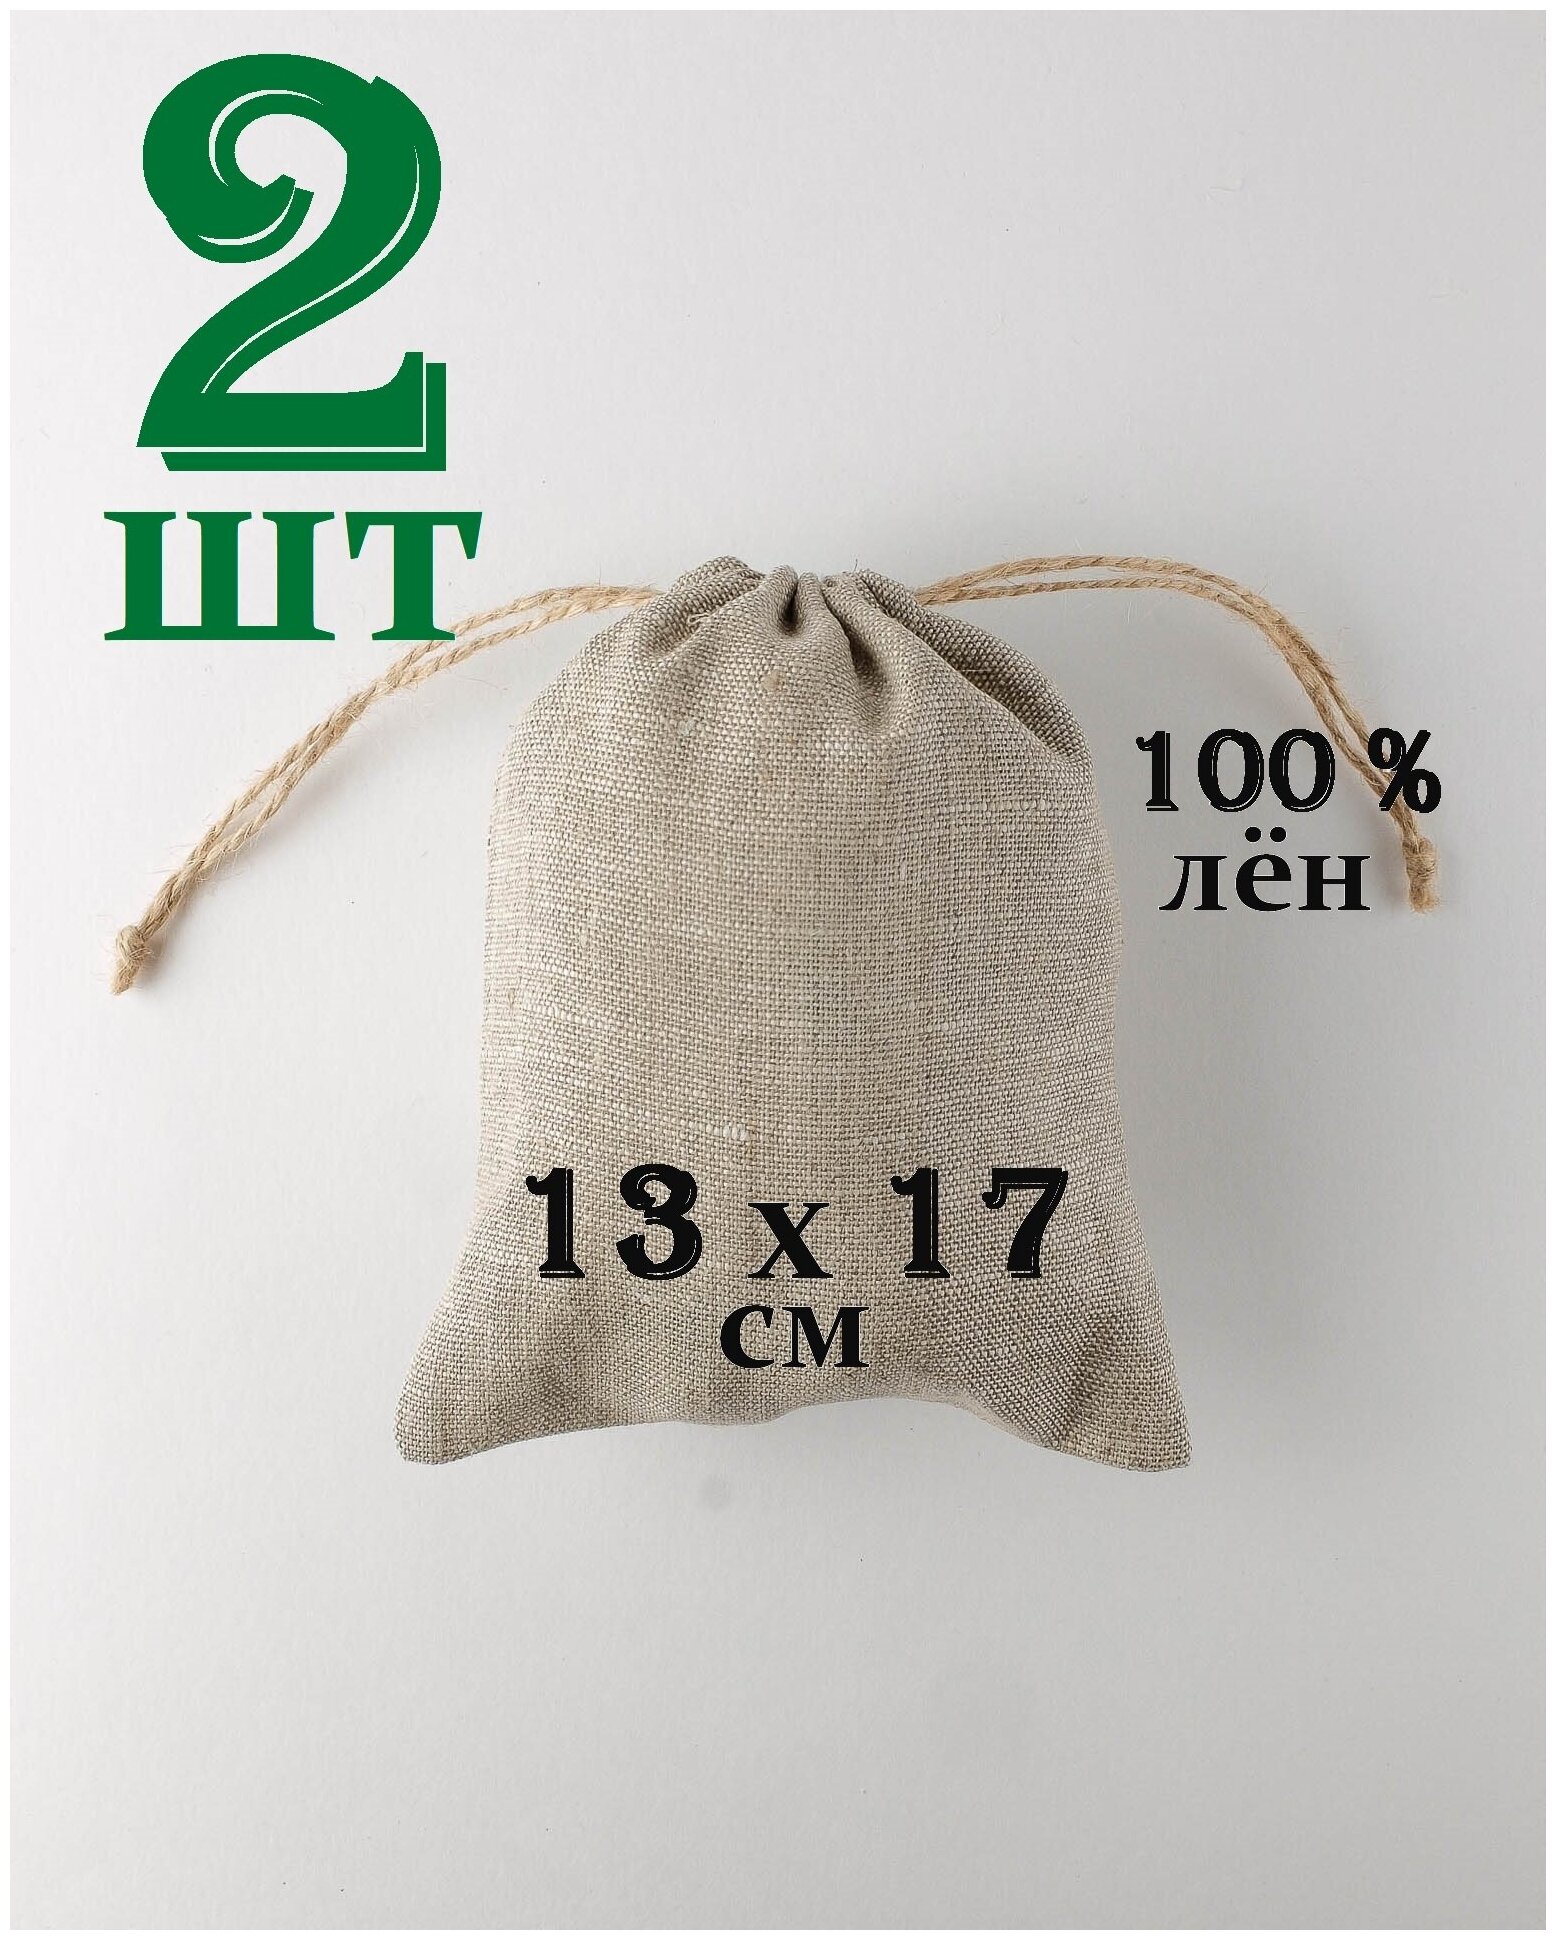 Льняной мешочек "Крепость" с джутовыми завязками 13 на 17 см. / 2 шт. / упаковка для подарков и хранения